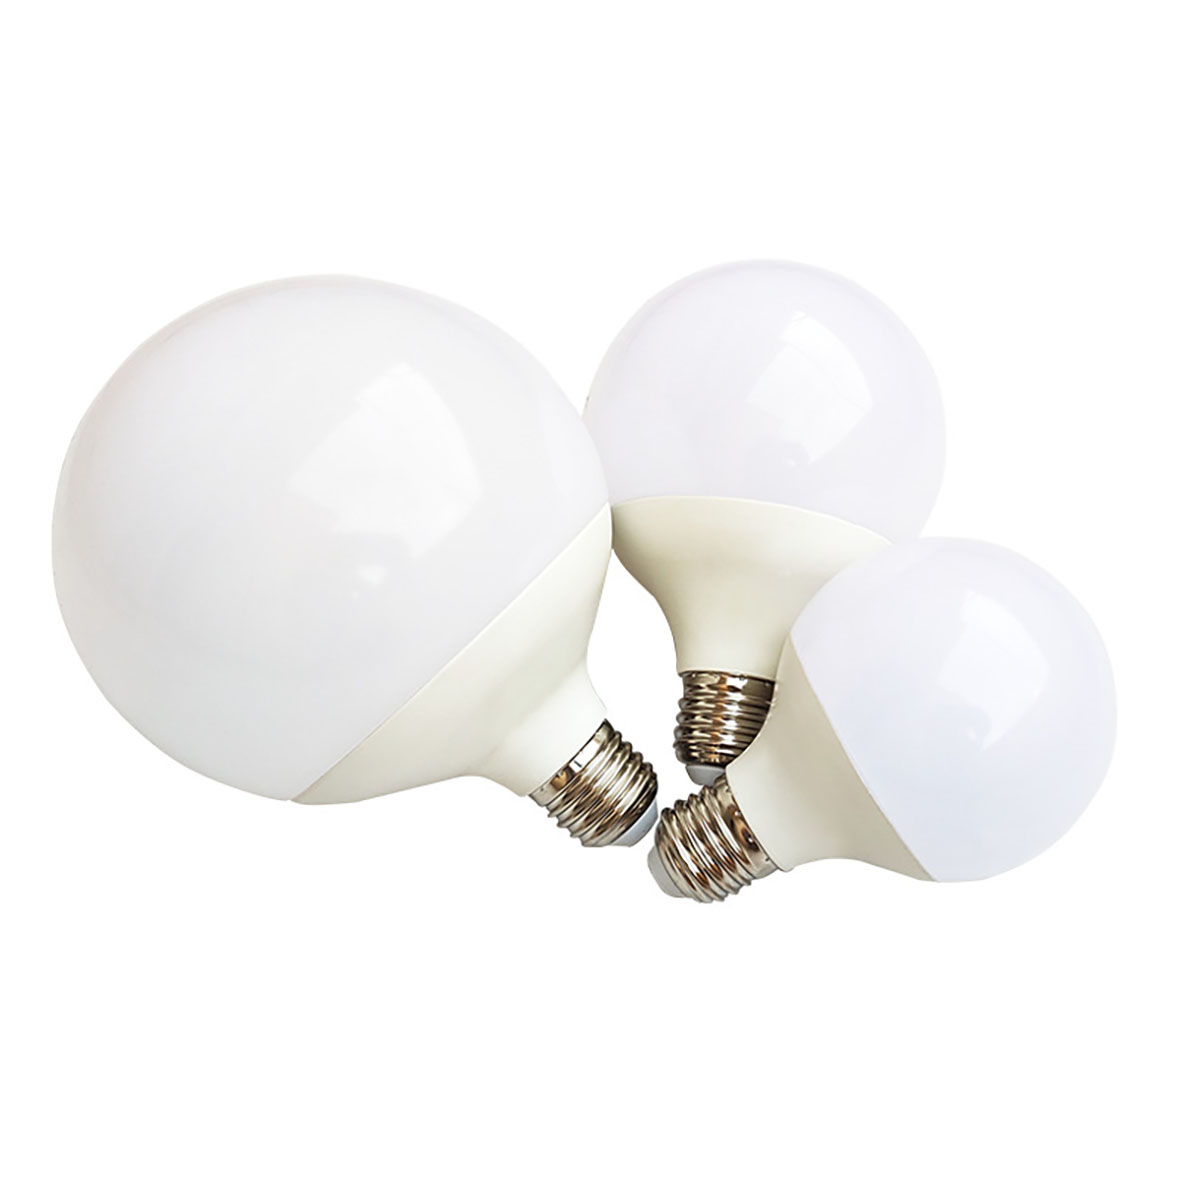 Factory 8w 10w 12w 15w 20w Led Bulb COB 6500K Warm White G Shape Globe Led Lamp Bulbs